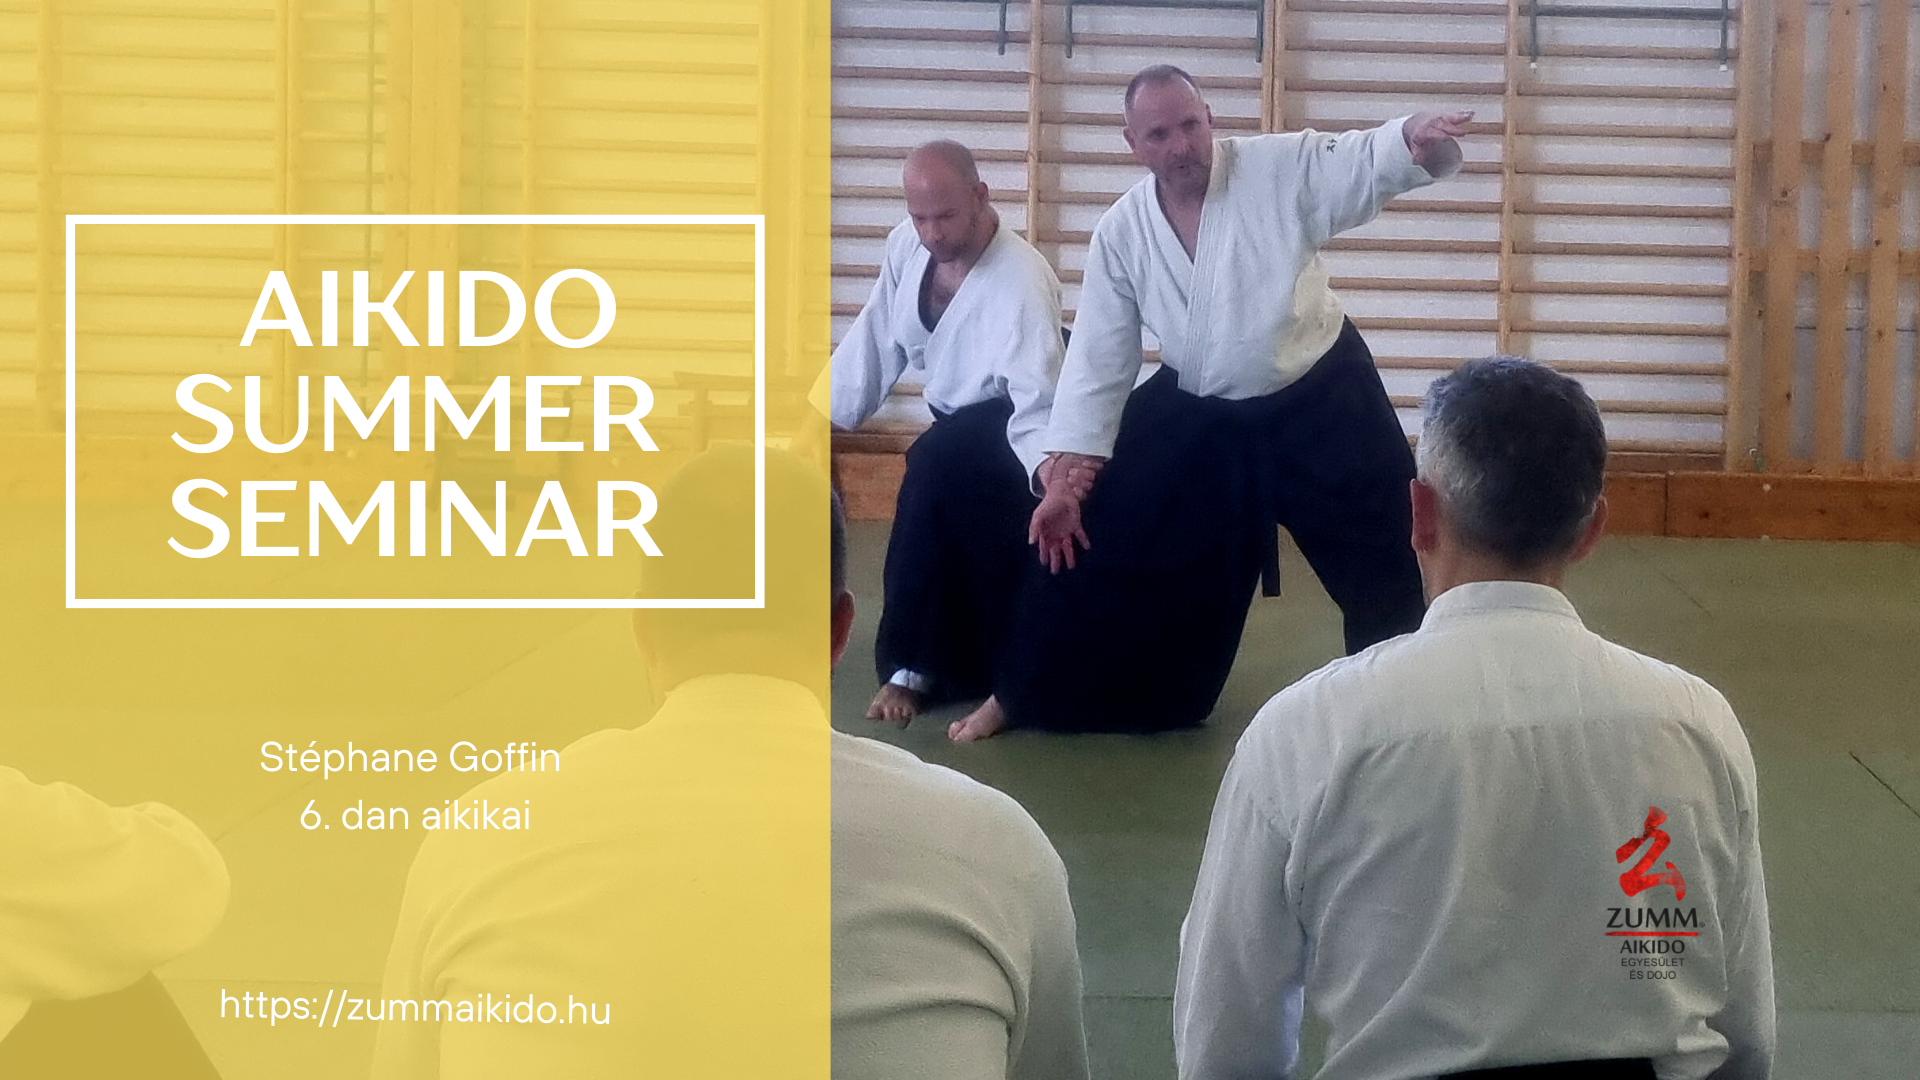 Aikido summer seminar 2023 event